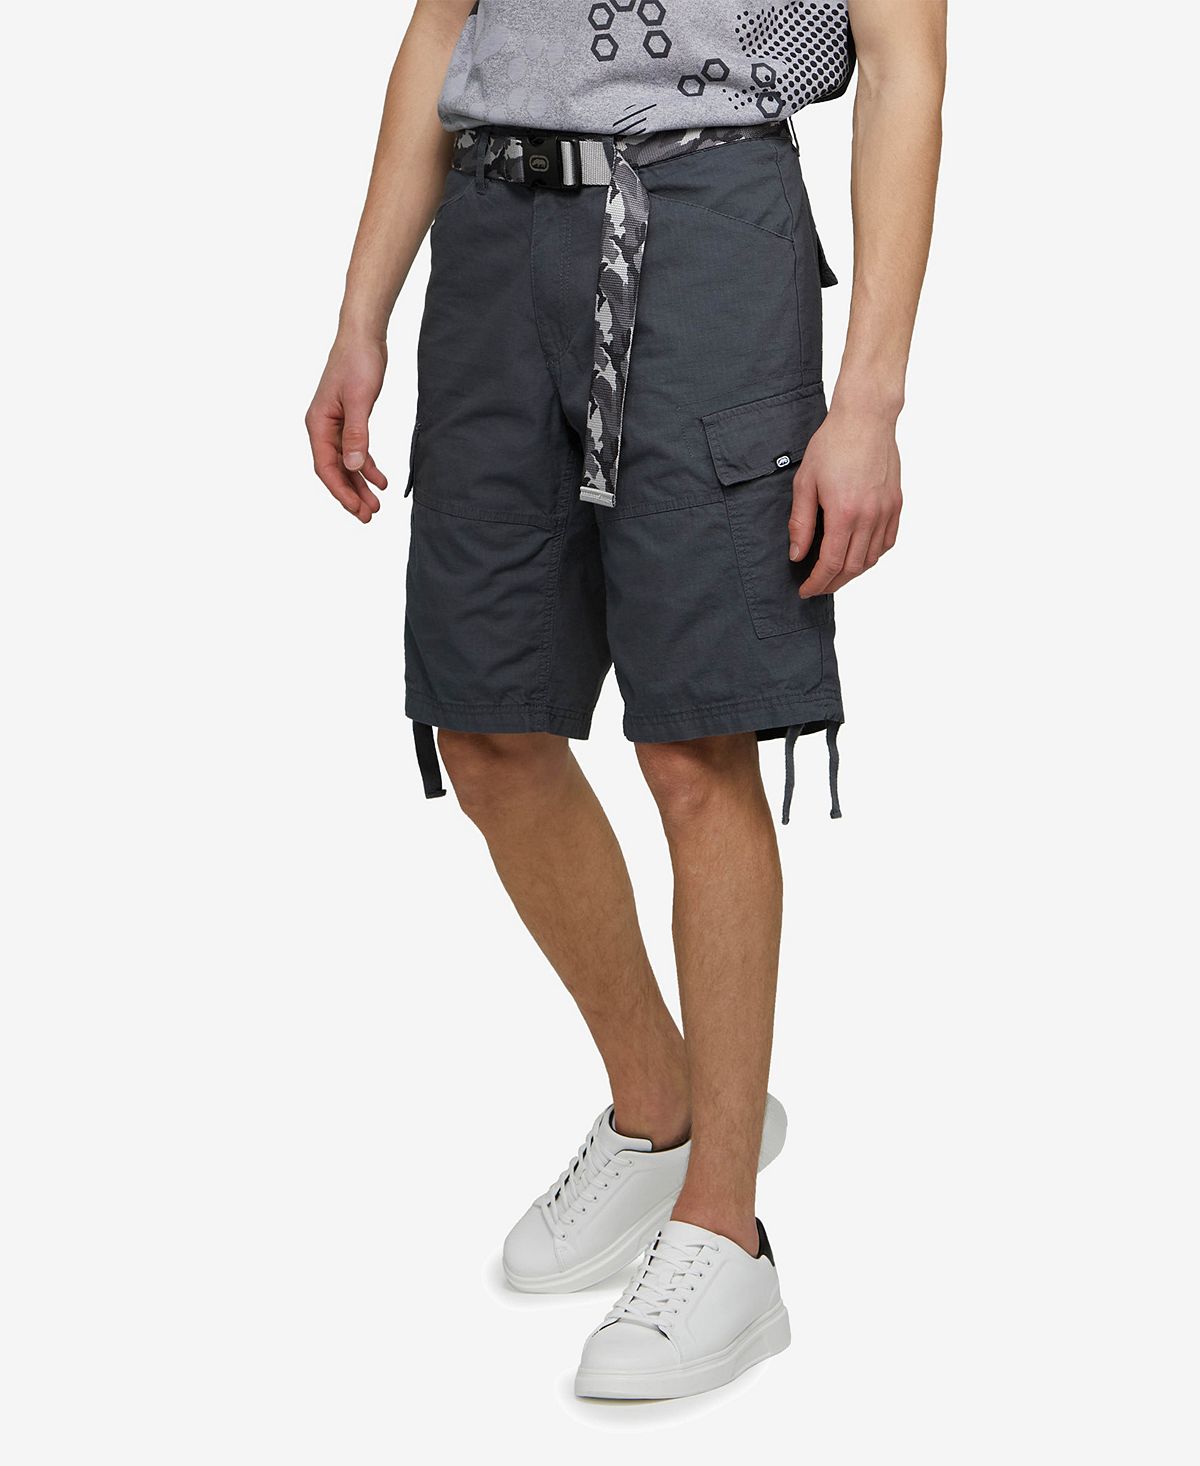 Мужские шорты-карго recon-go с поясом для больших и высоких размеров Ecko Unltd